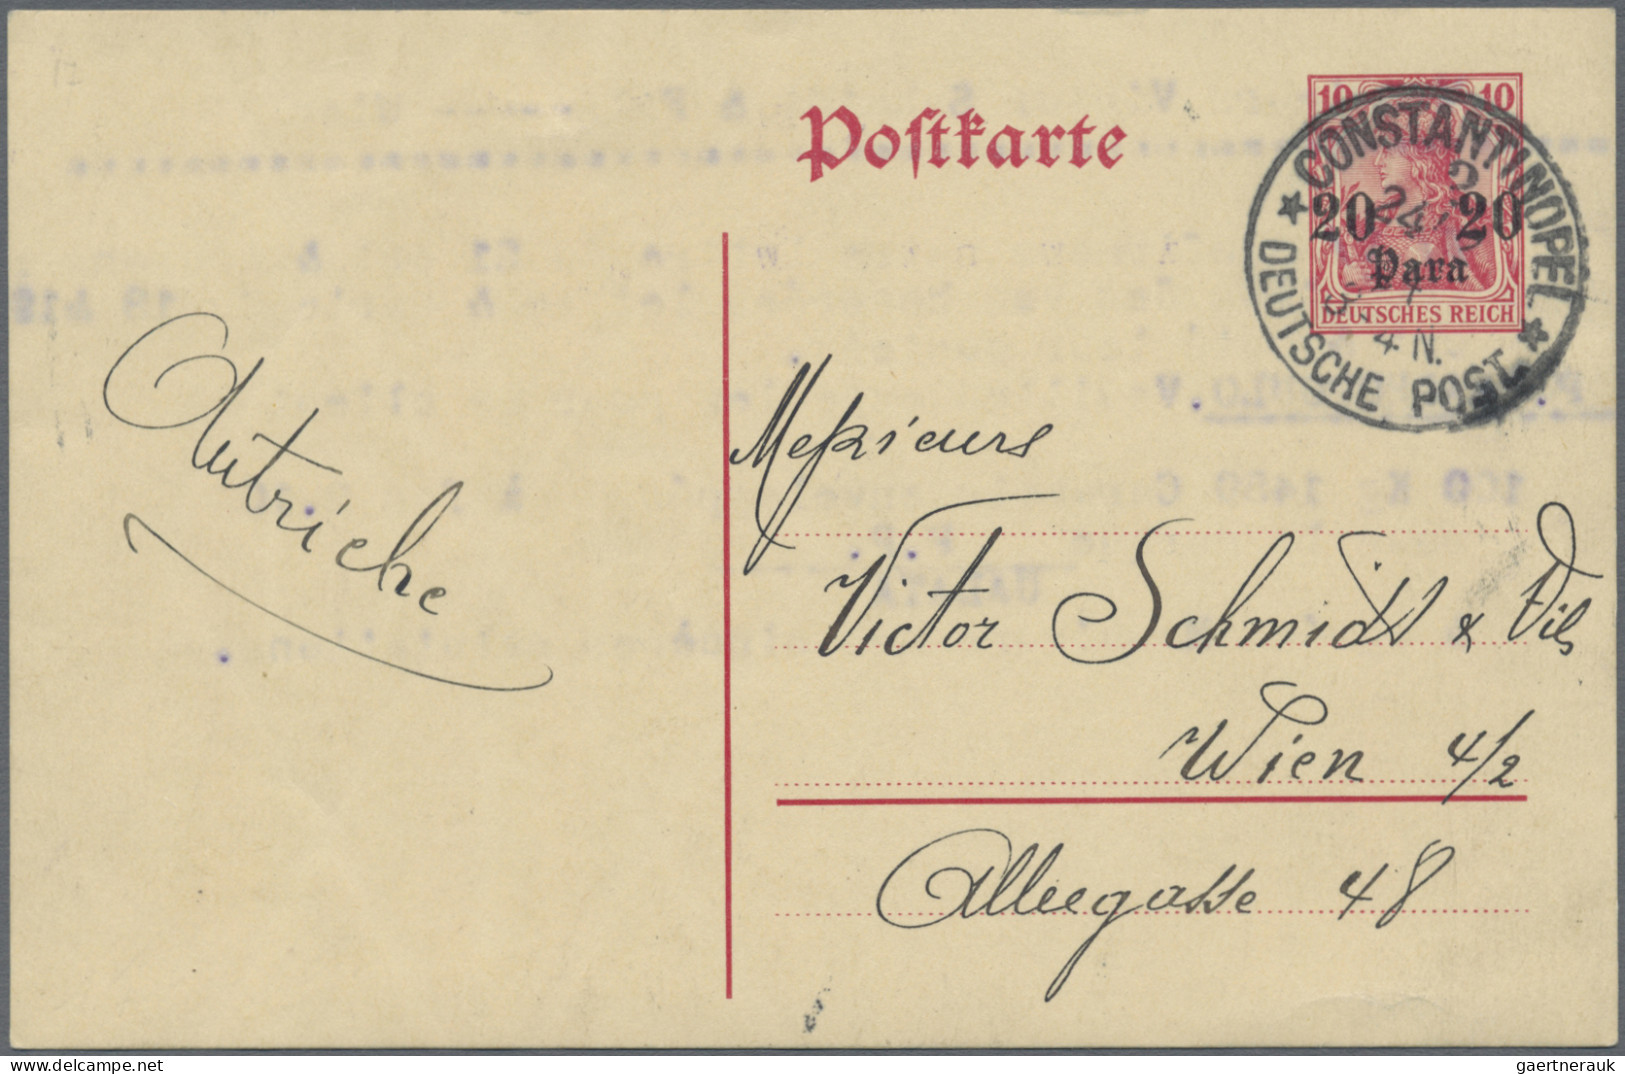 Deutsche Post in der Türkei - Ganzsachen: 1897/1914, saubere Partie von 17 gebra